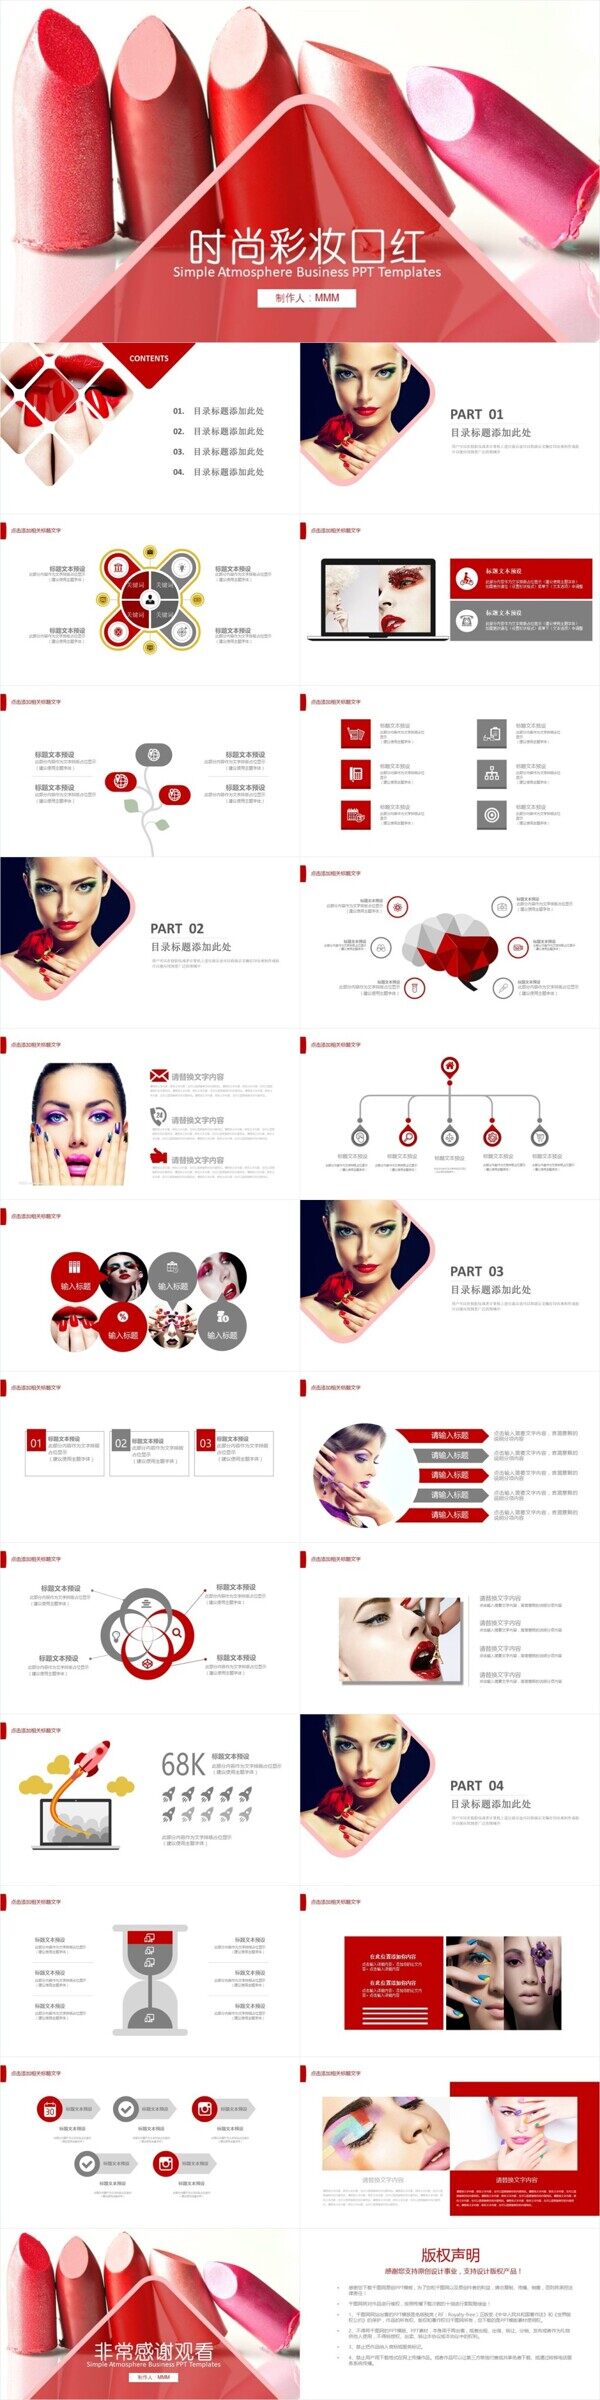 美容美女彩妆口红产品宣传介绍PPT模板